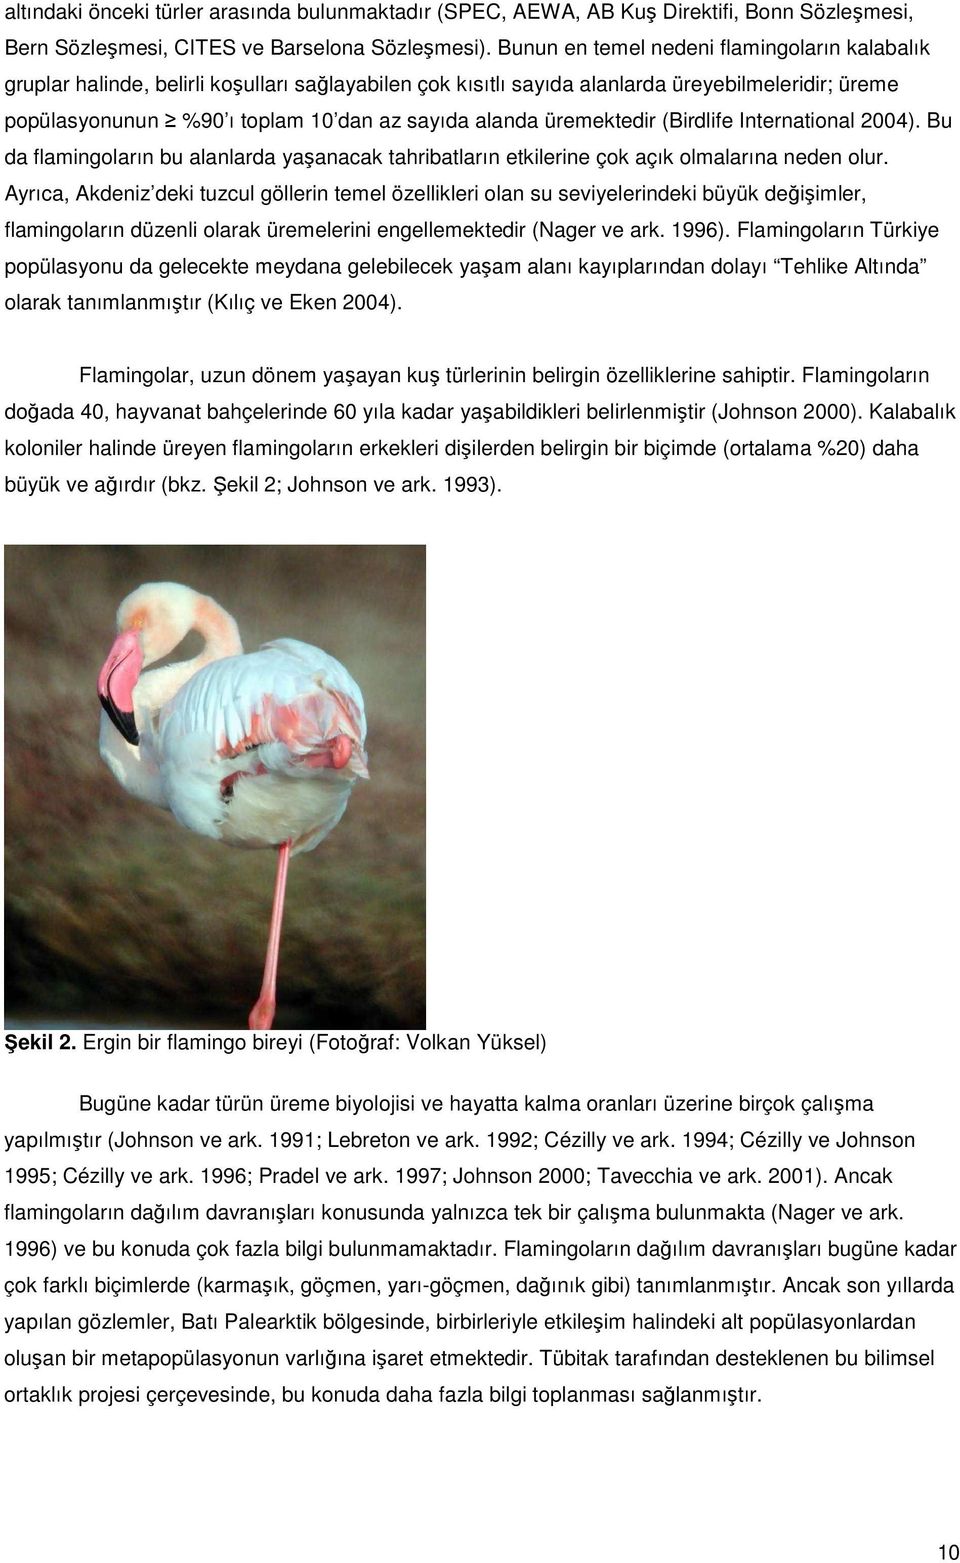 üremektedir (Birdlife International 2004). Bu da flamingoların bu alanlarda yaşanacak tahribatların etkilerine çok açık olmalarına neden olur.